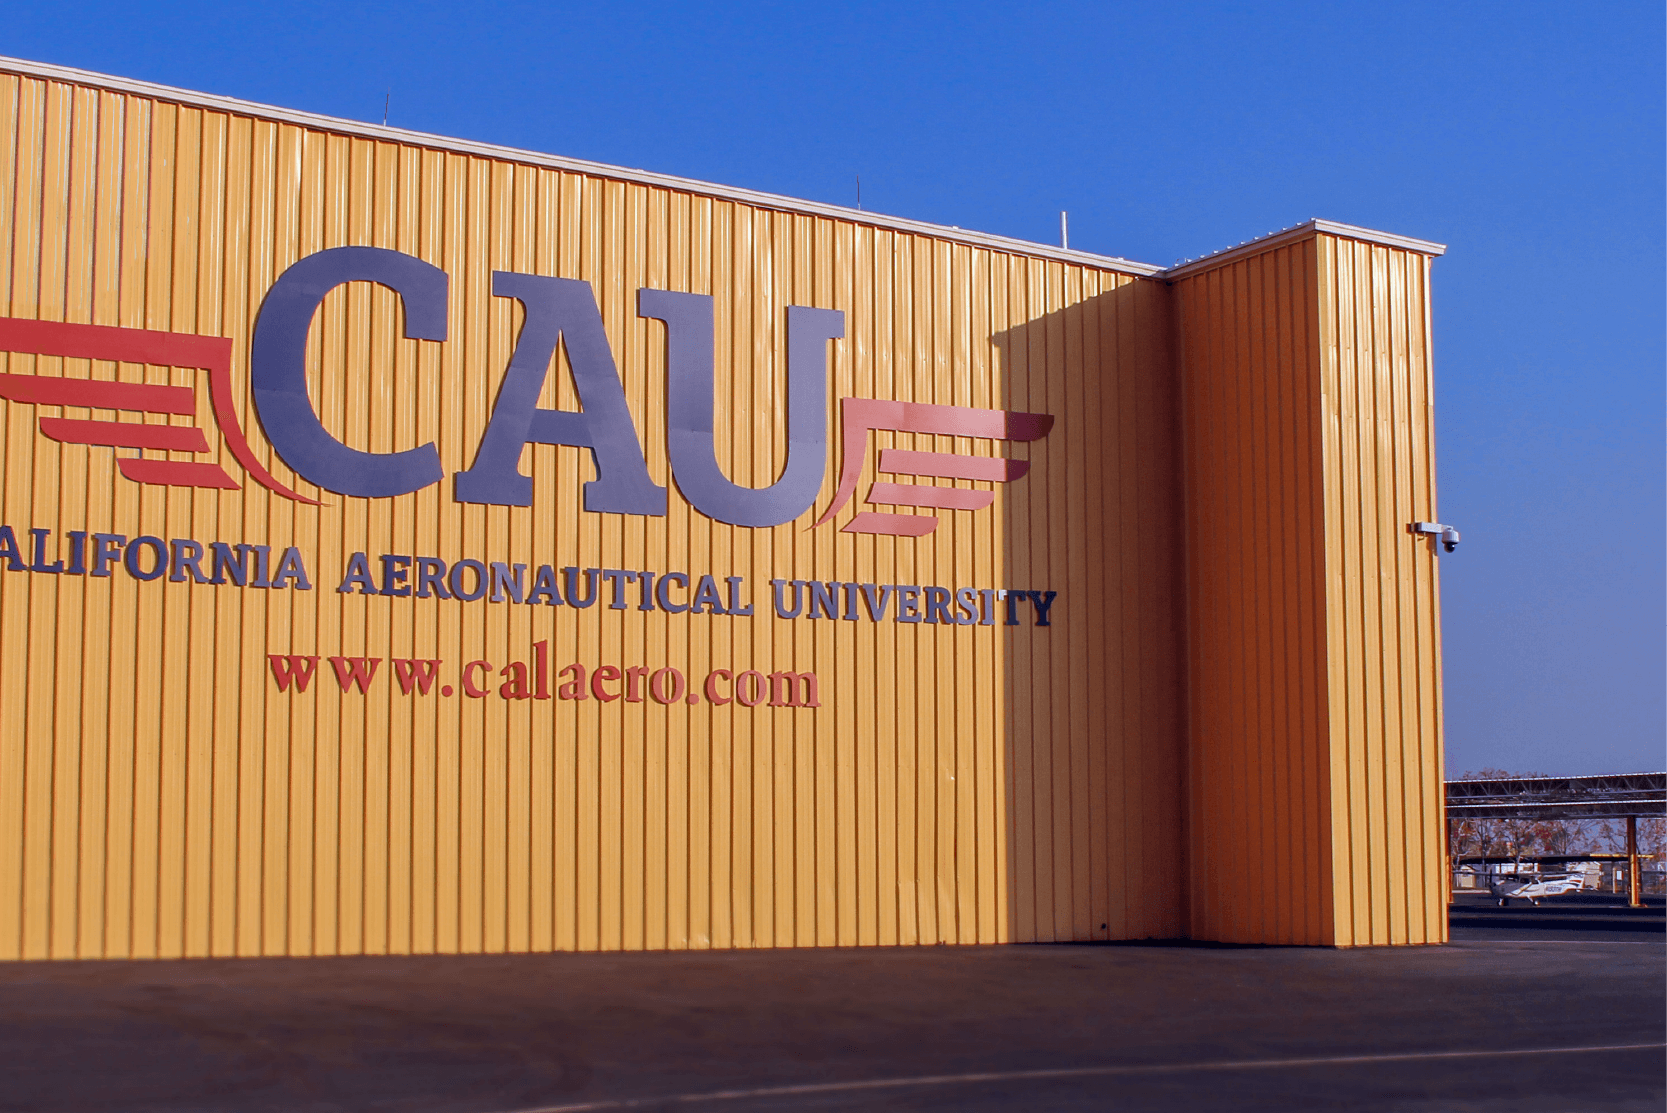 CAU Bakersfield hangar for aircraft maintenance